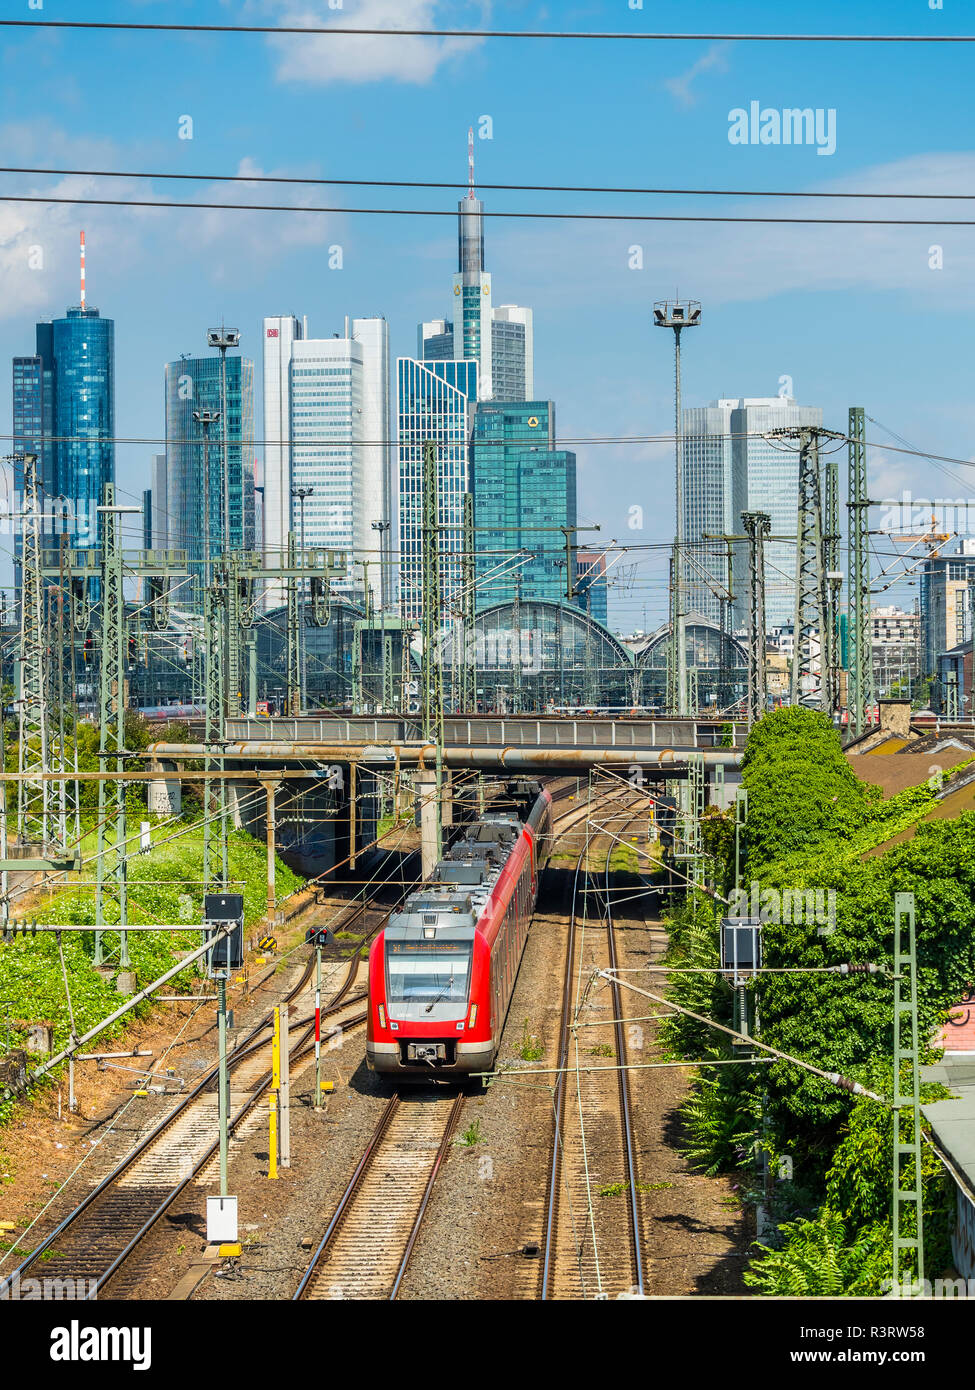 Germania, Francoforte, visualizzare la stazione centrale con il quartiere finanziario in background Foto Stock